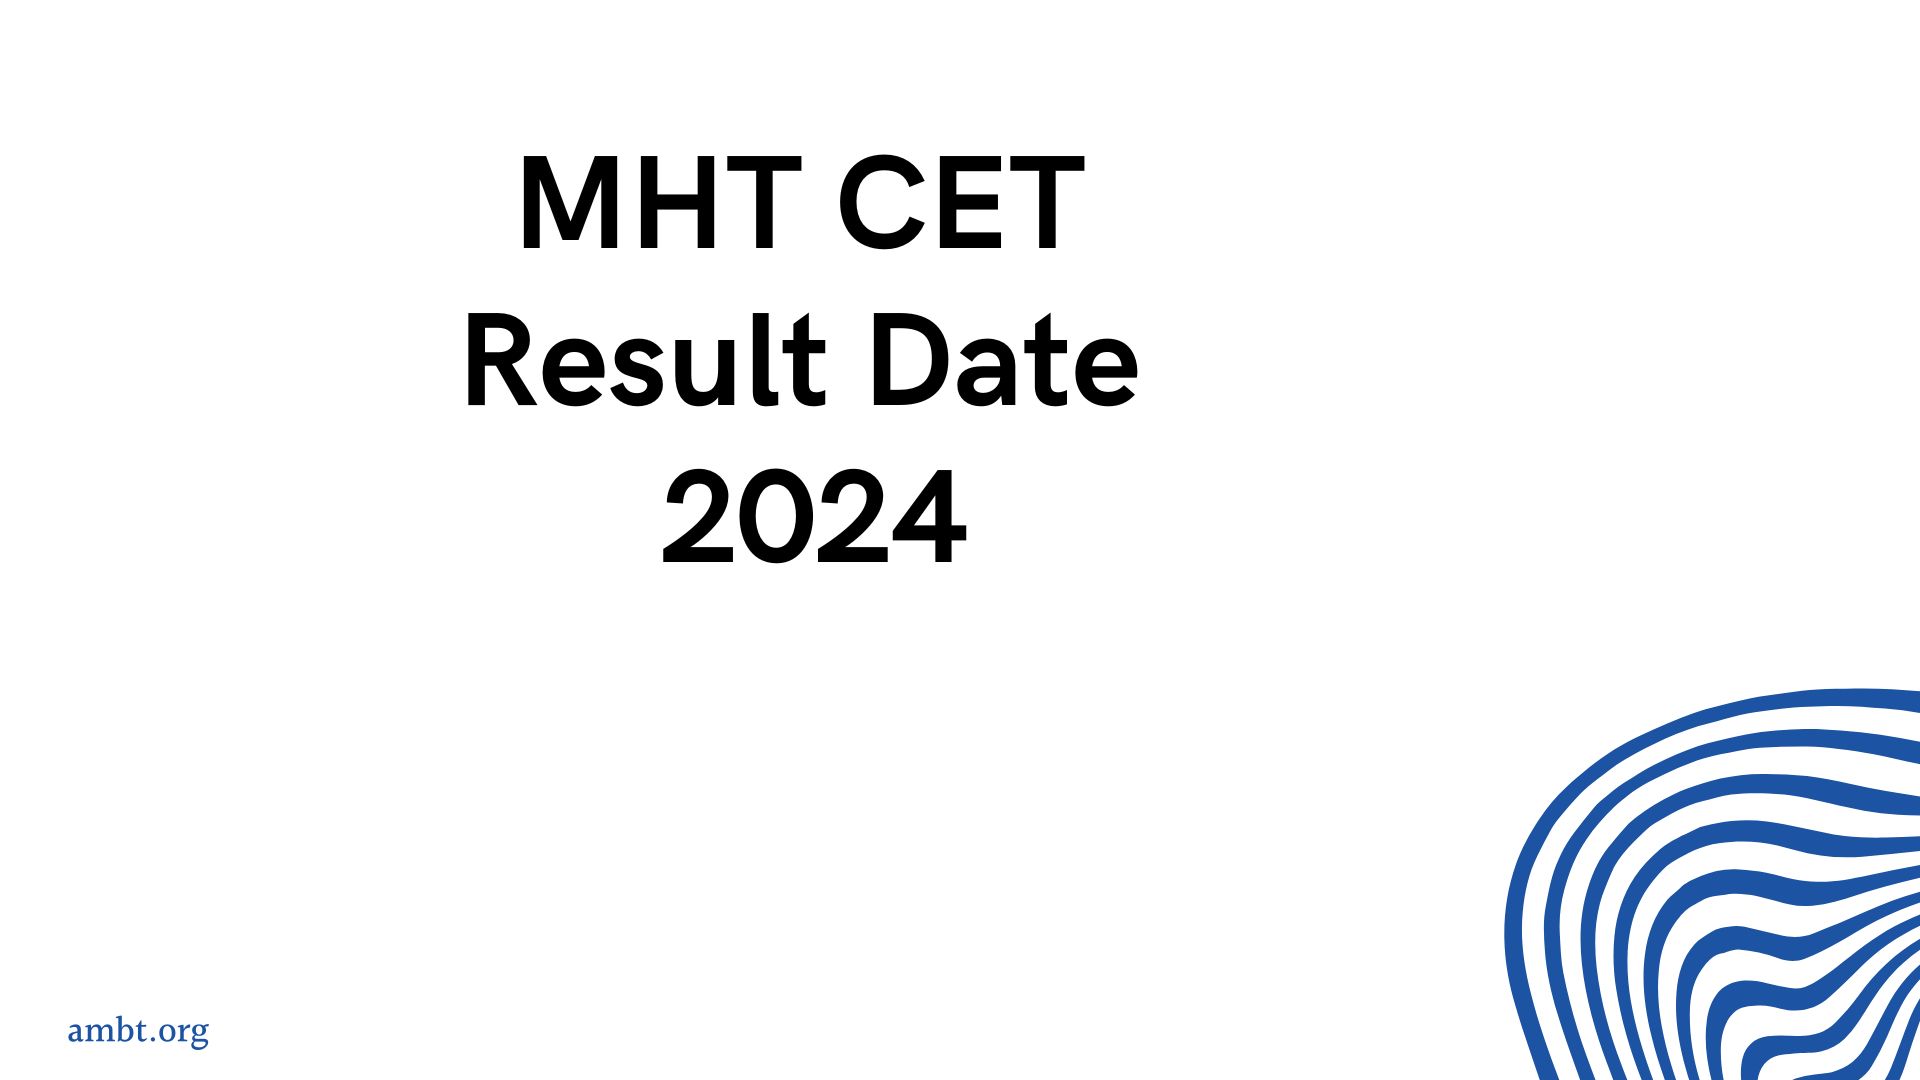 mht cet result date 2024